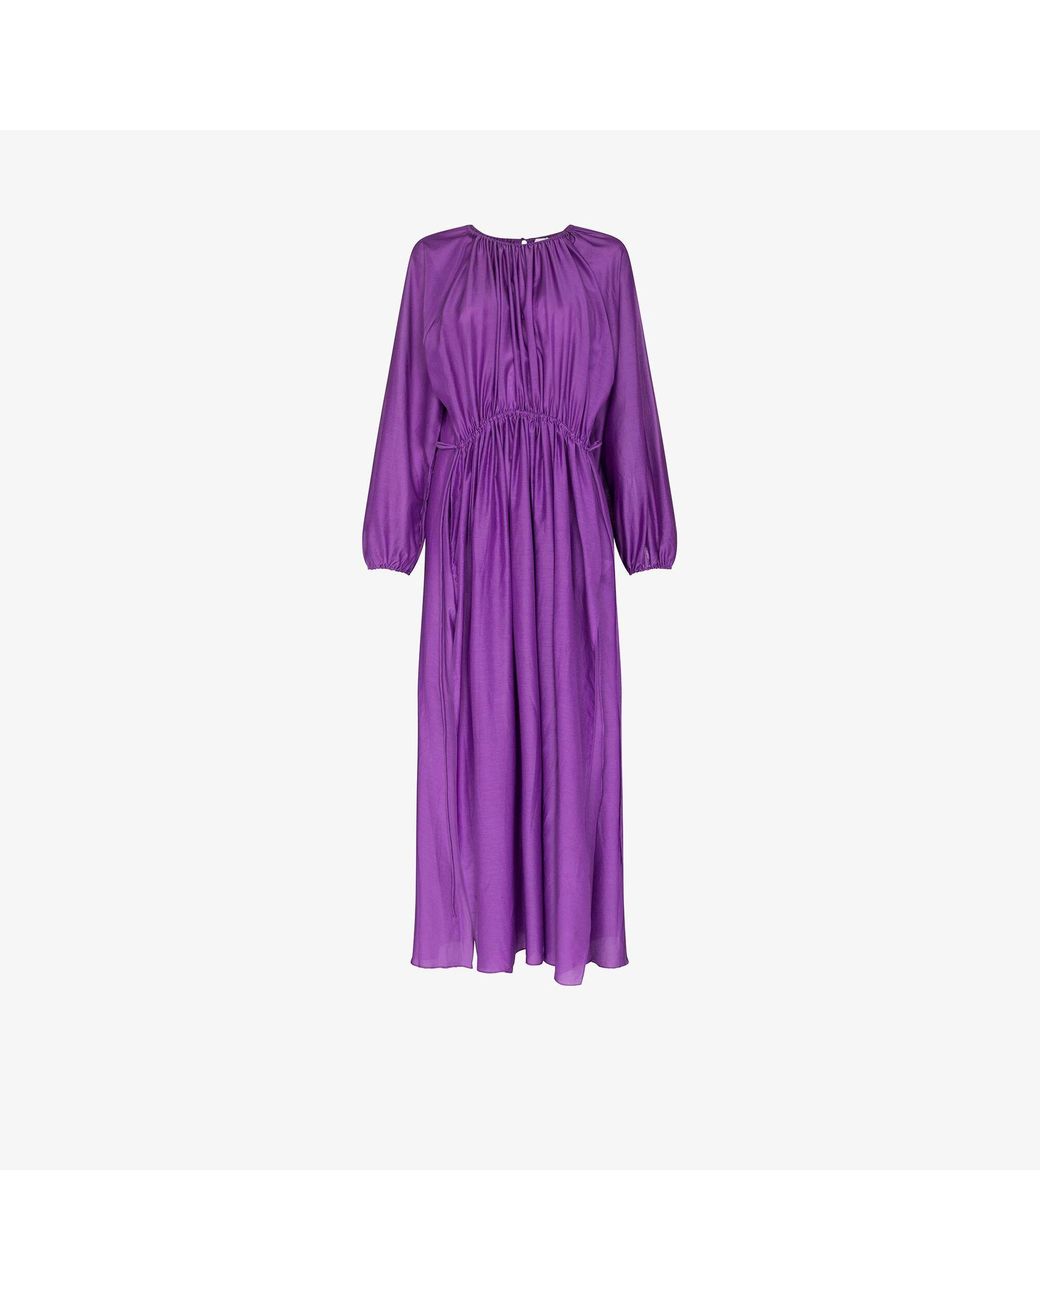 Matteau Channel Organic Cotton Midi Dress in Purple | Lyst